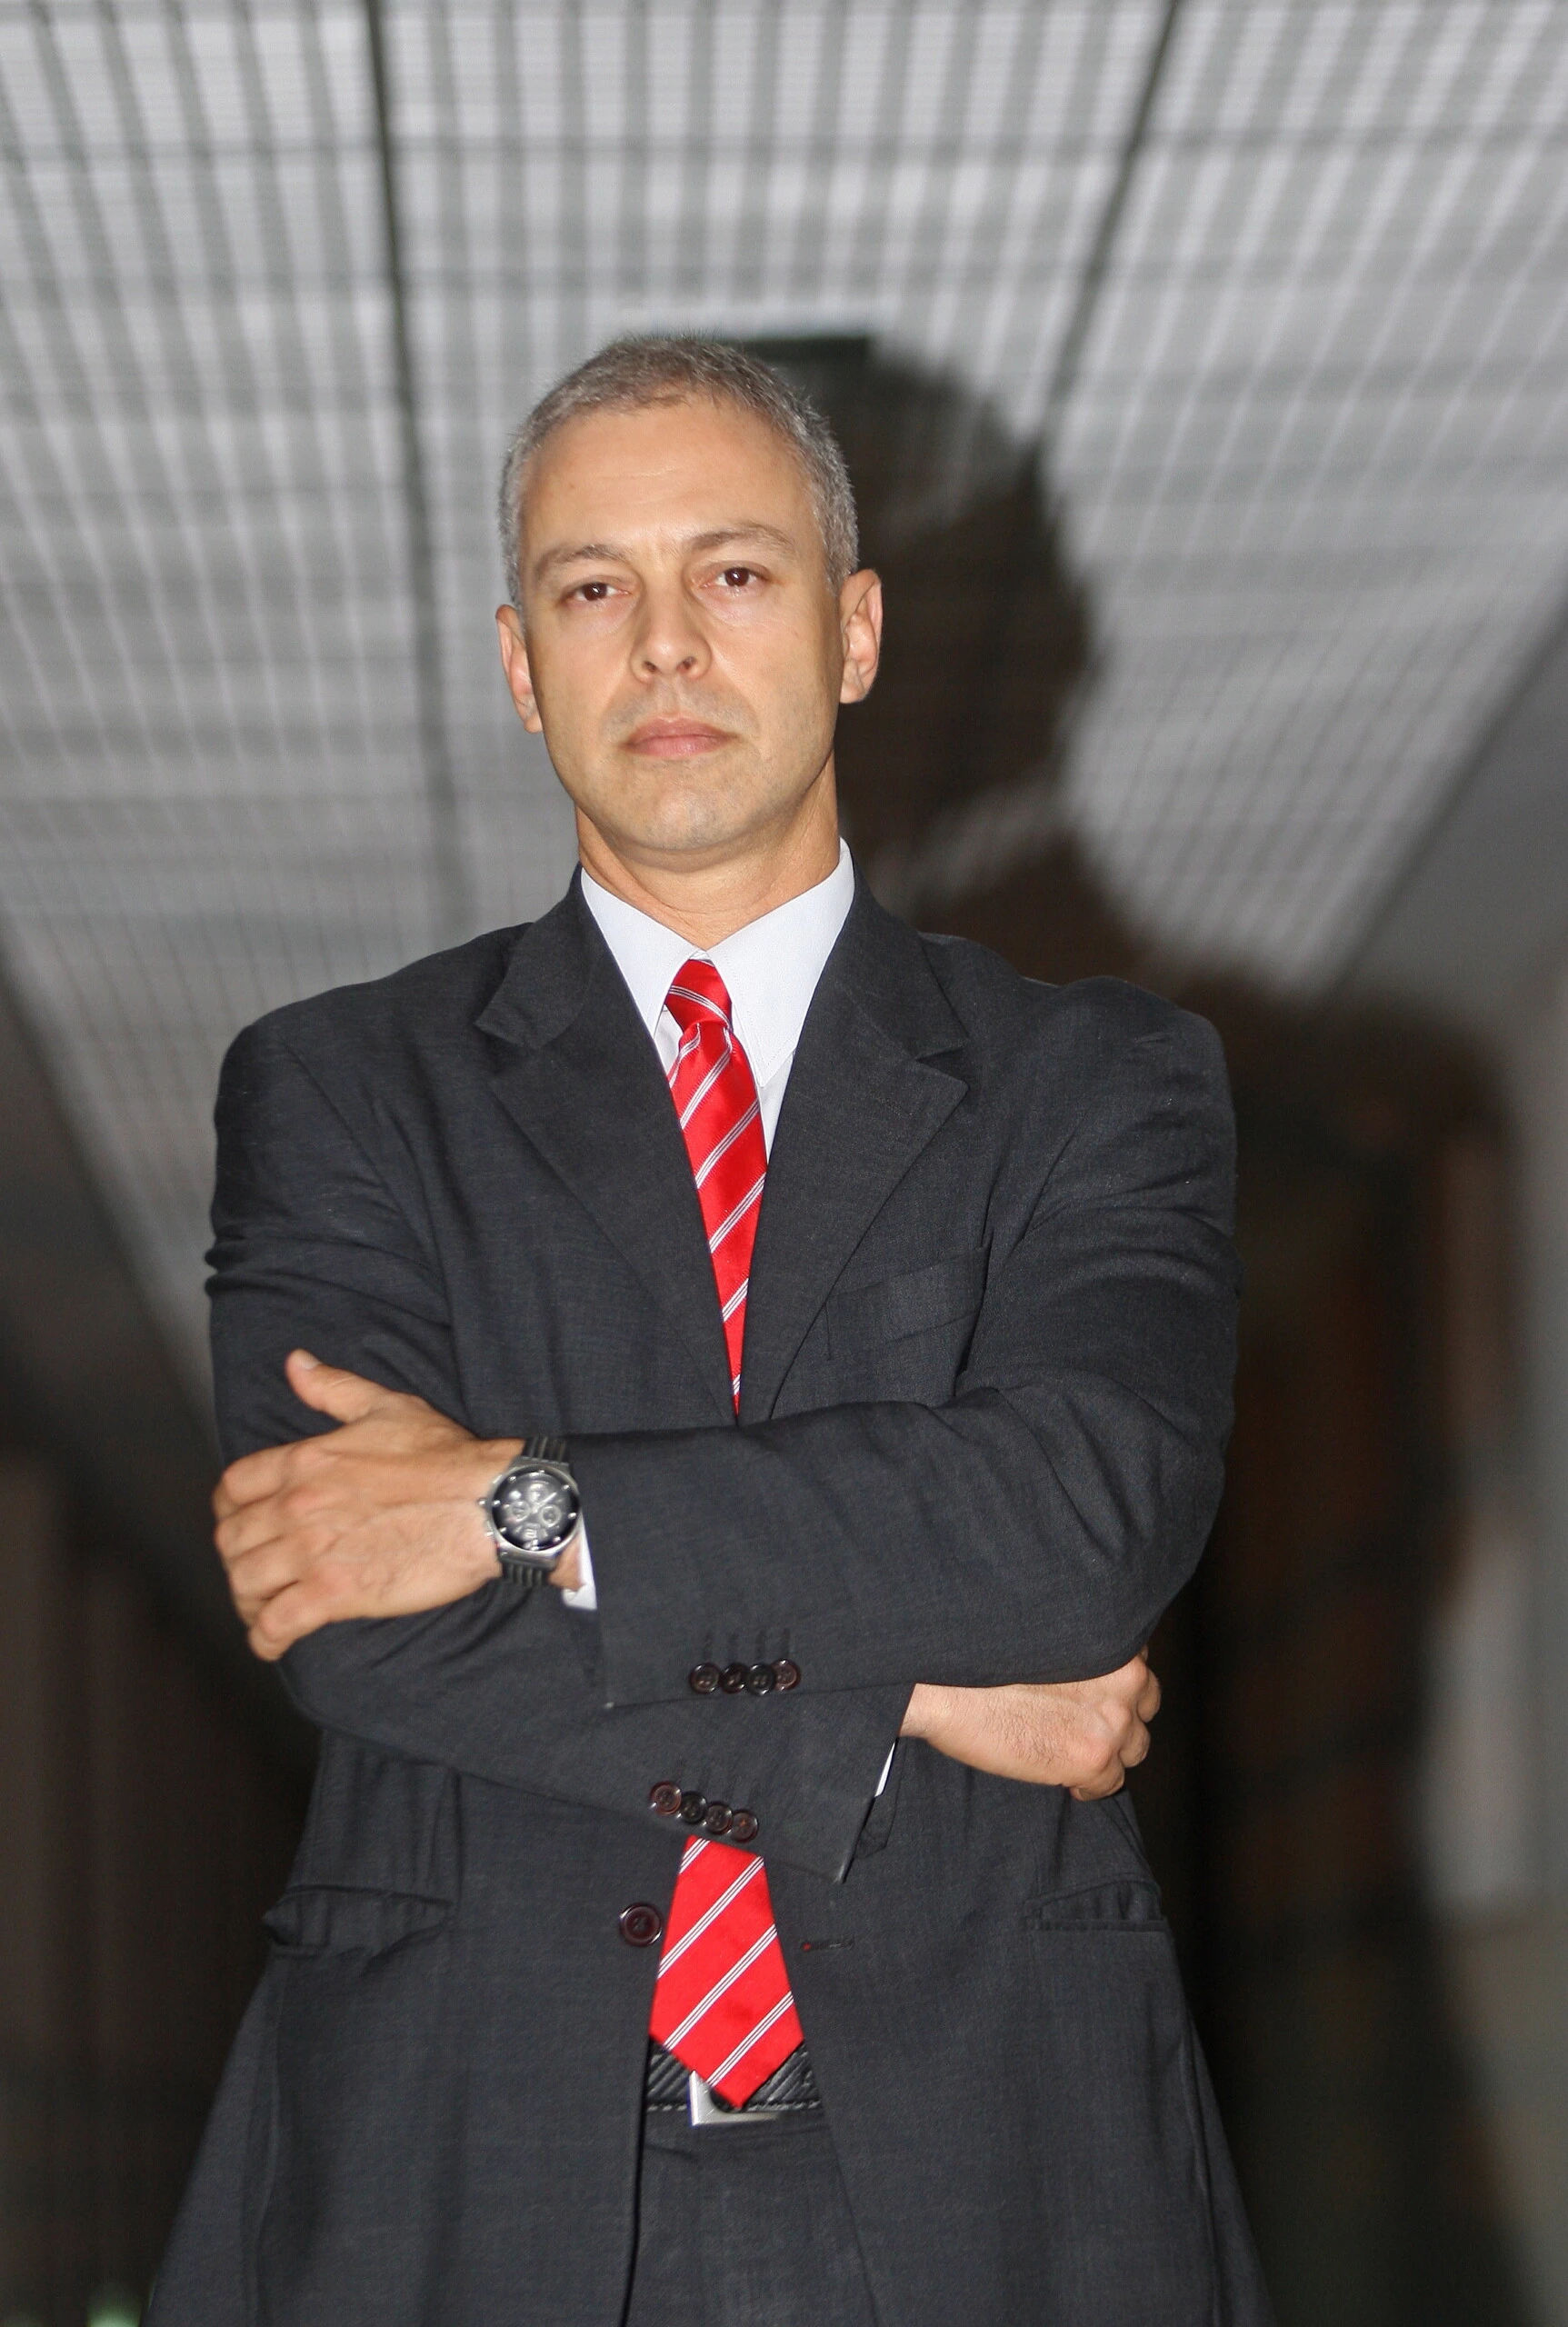 O delegado federal Victor Cesar Carvalho dos Santos aparece como sócio em empresas de segurança desde 2000.